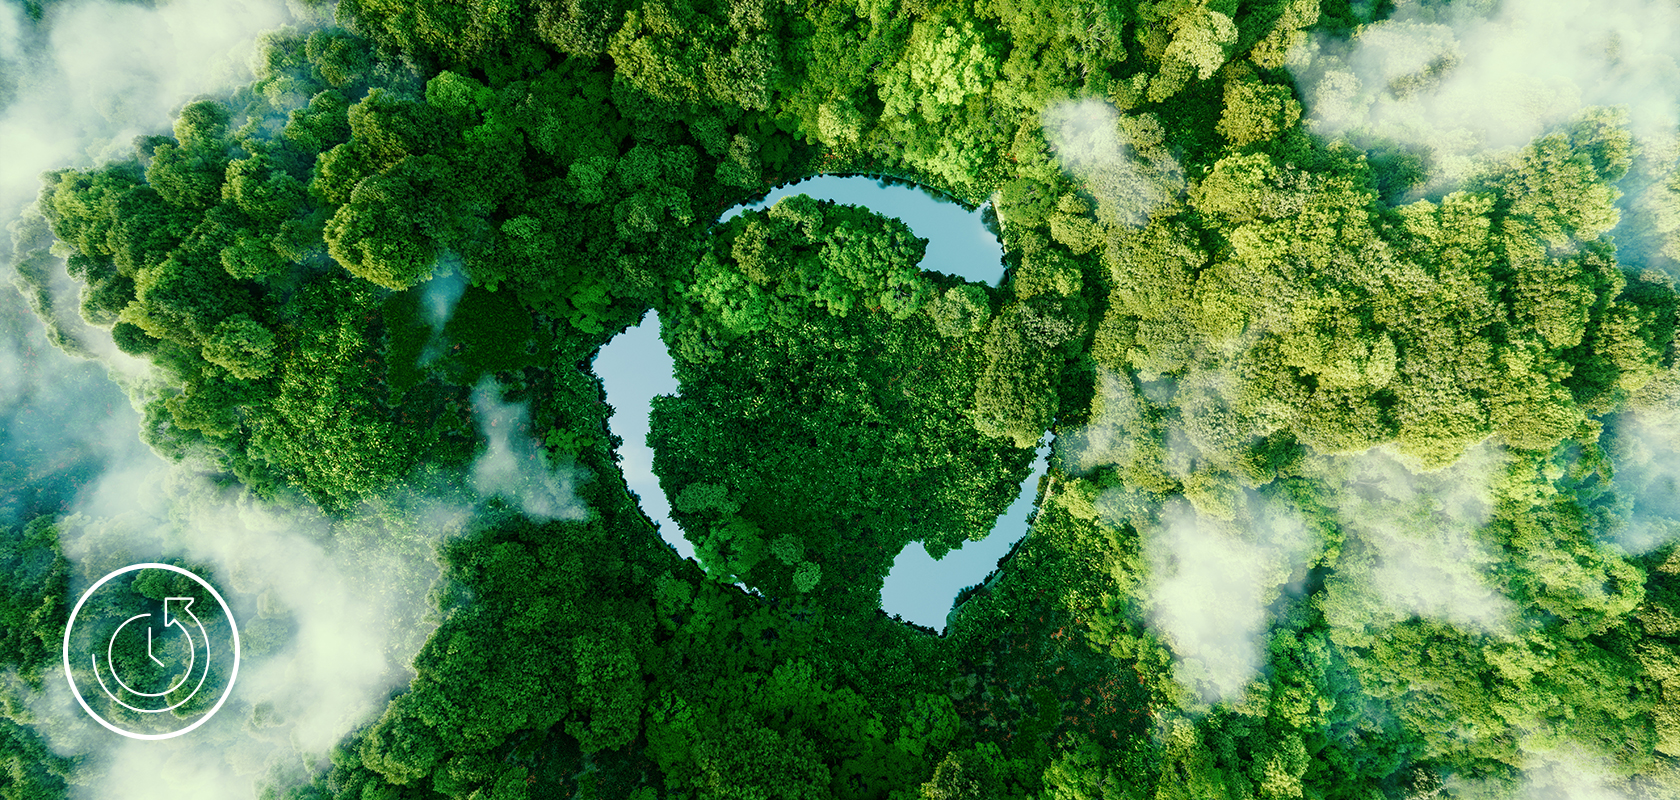 Een luchtfoto van een weelderig bos met een opvallende cirkelvormige open plek, die een milieuvriendelijk initiatief of de kracht van de natuur symboliseert.